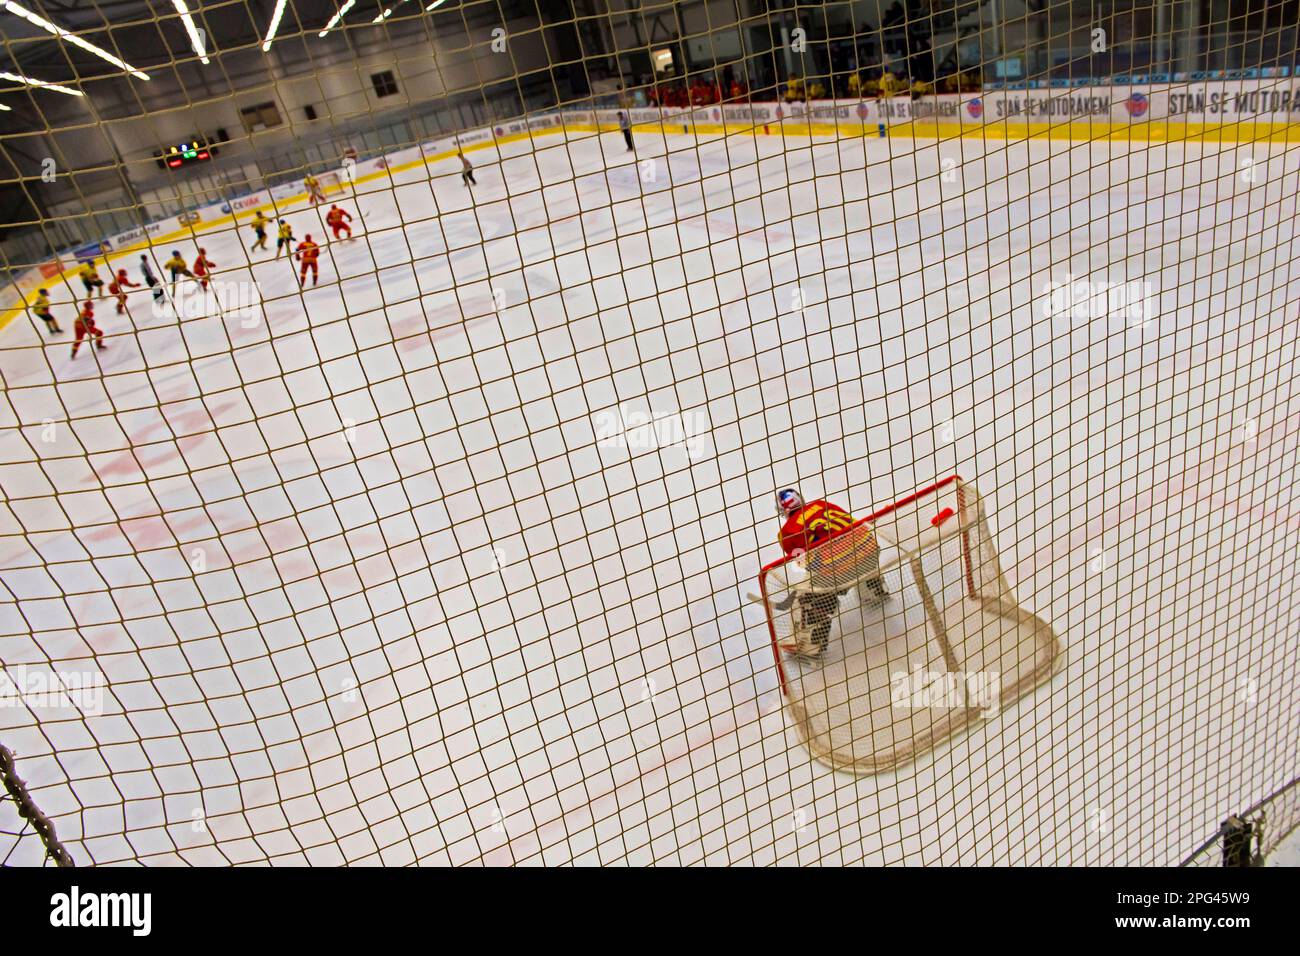 Eishockey-Torwart im Netz während des Hallenspiels von hinten Stockfoto